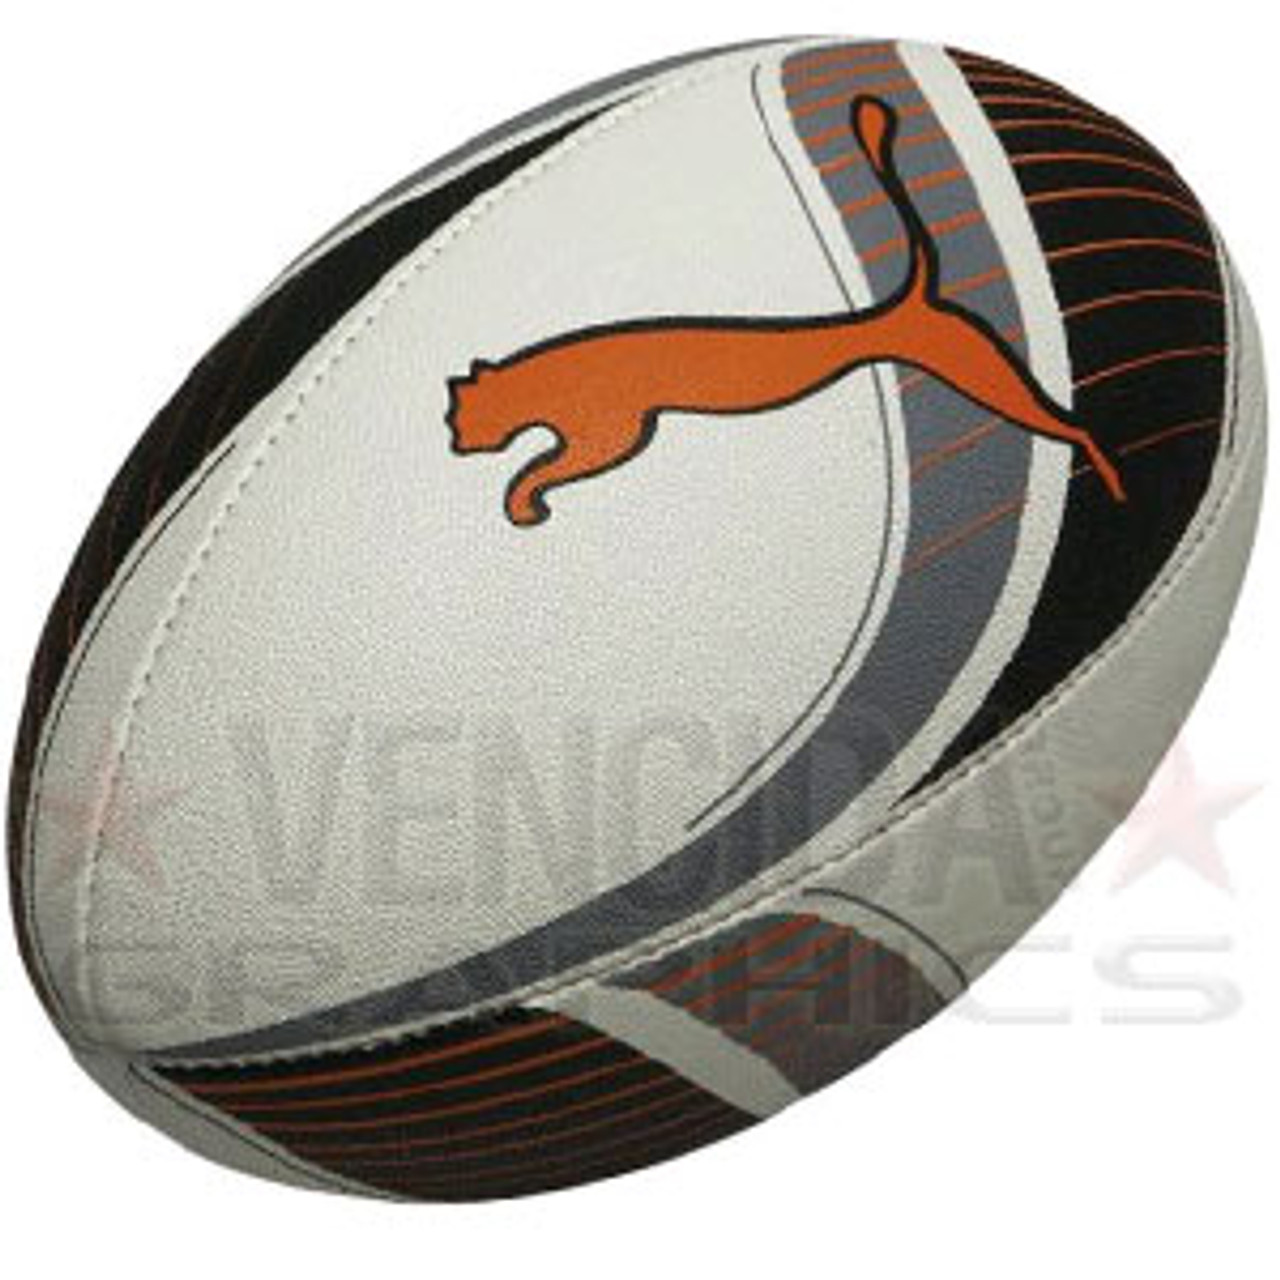 puma rugby ball